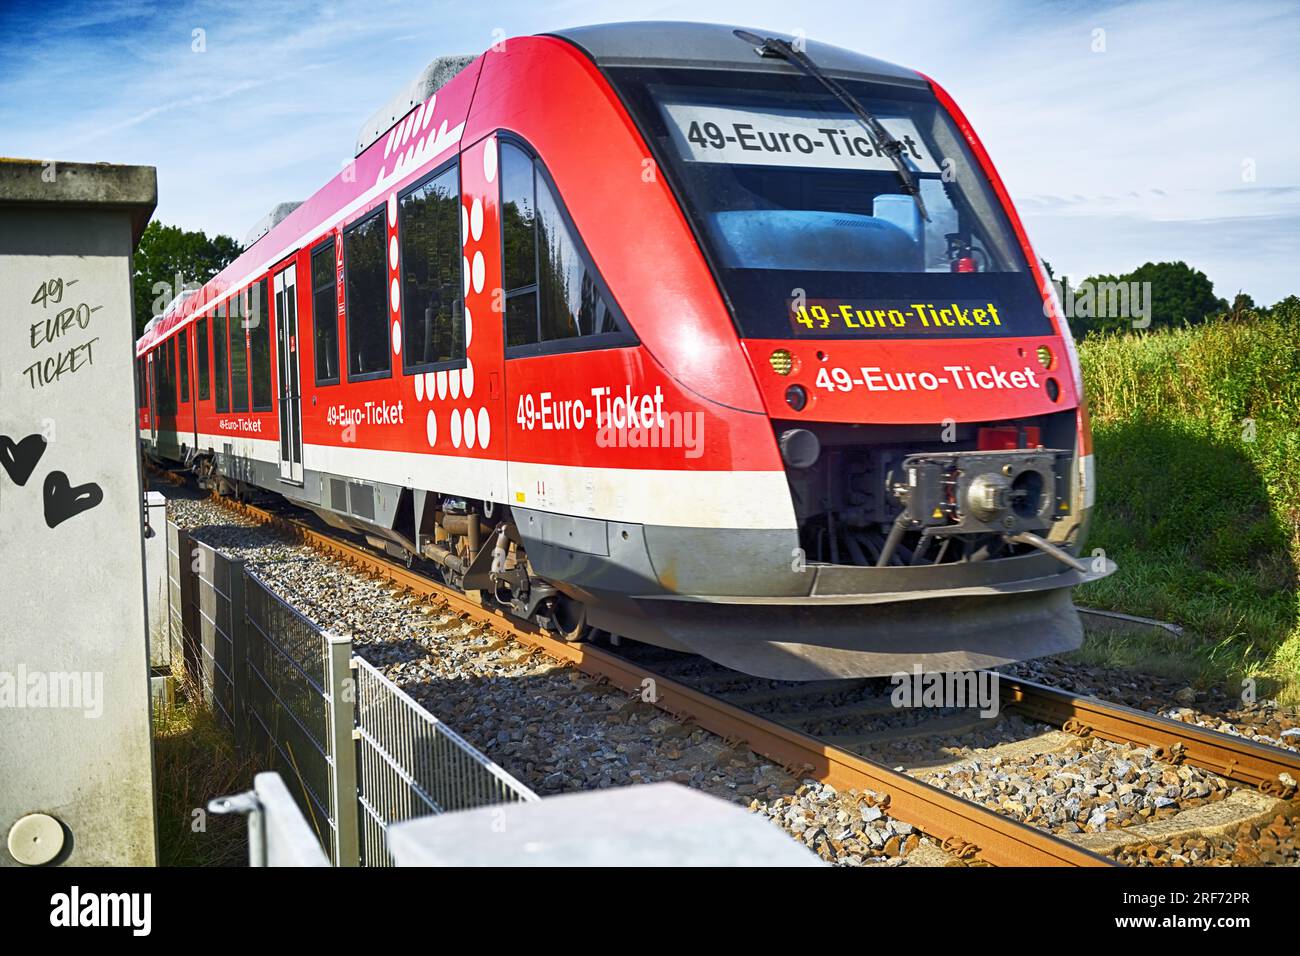 FOTOMONTAGE, Regionalbahn mit Aufschrift 49-Euro-Ticket, Symbolfoto Deutschlandticket Stock Photo